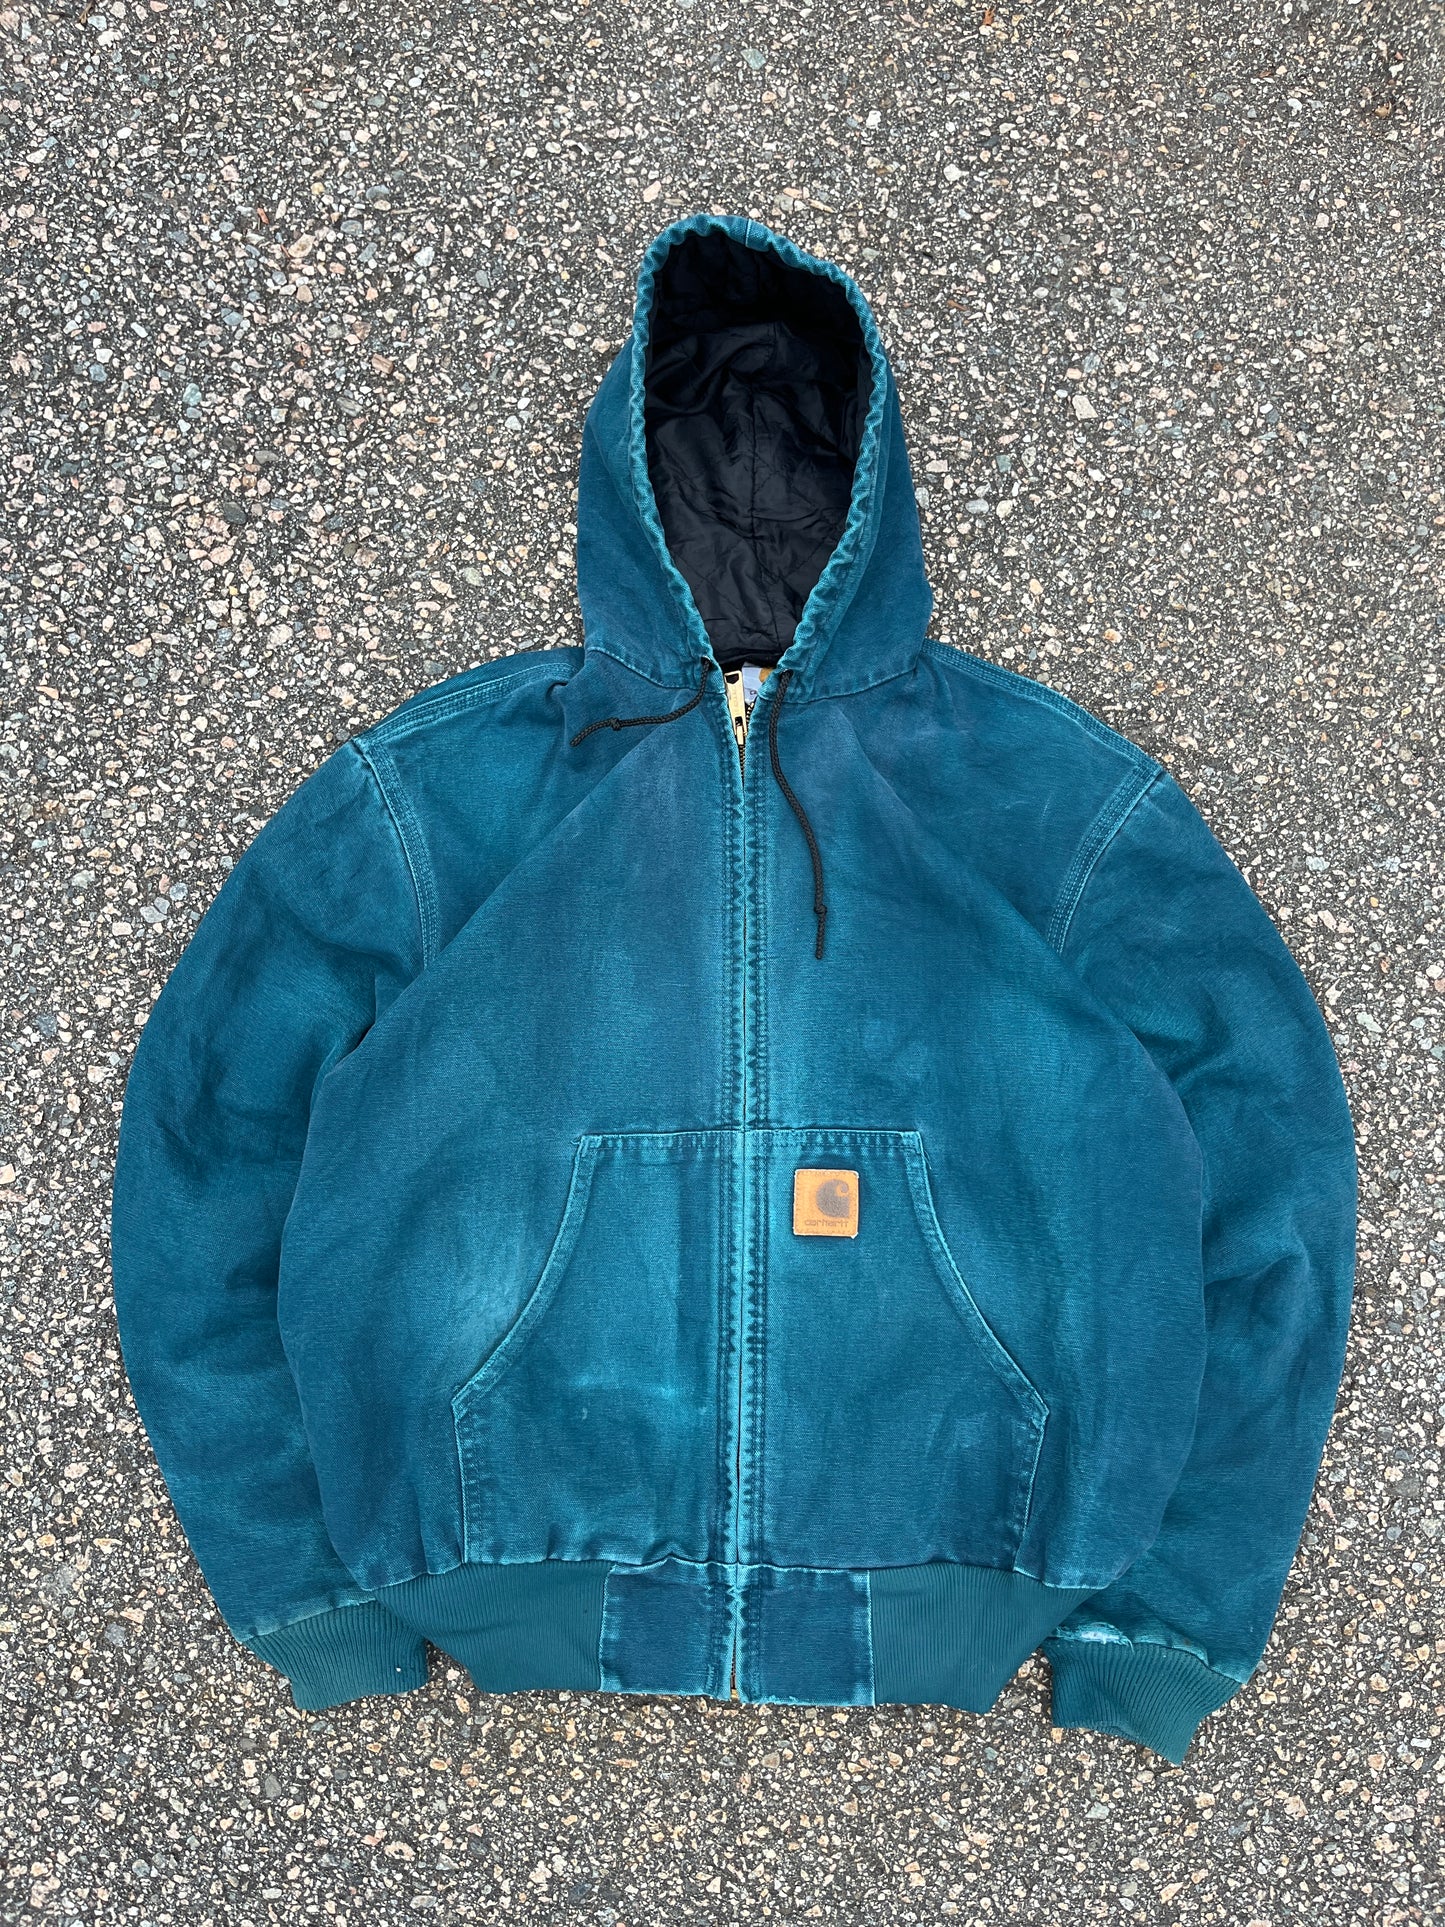 Faded Aqua Blue Carhartt Active Jacket - Medium